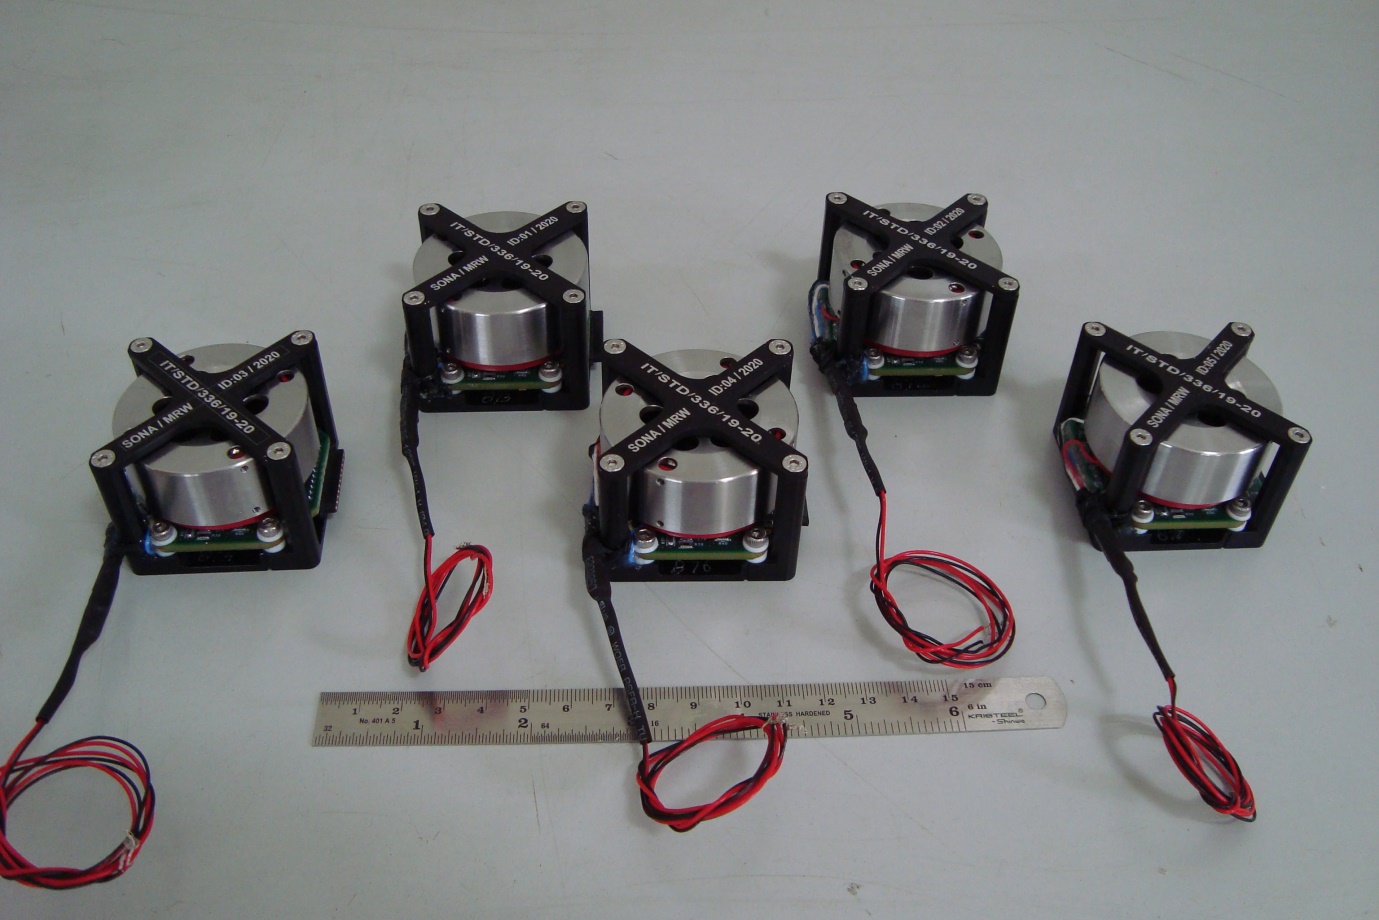 Miniature reaction wheels for CUBESAT